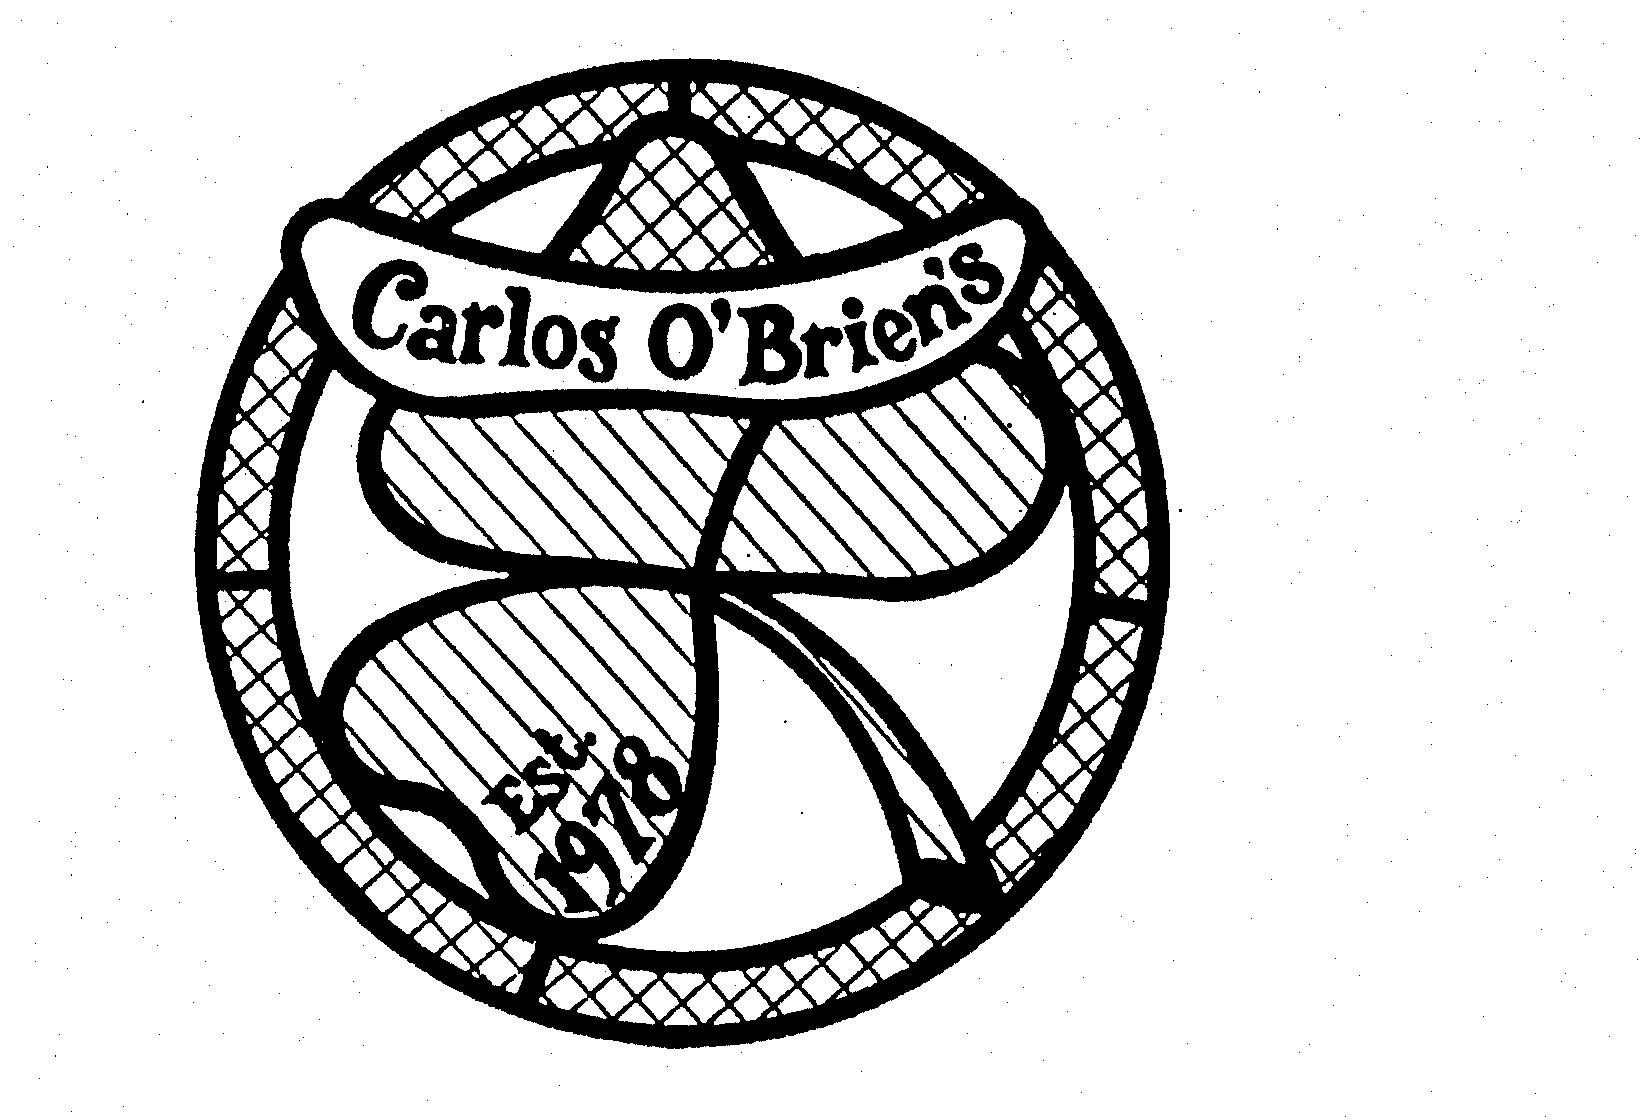 CARLOS O'BRIEN'S EST. 1978